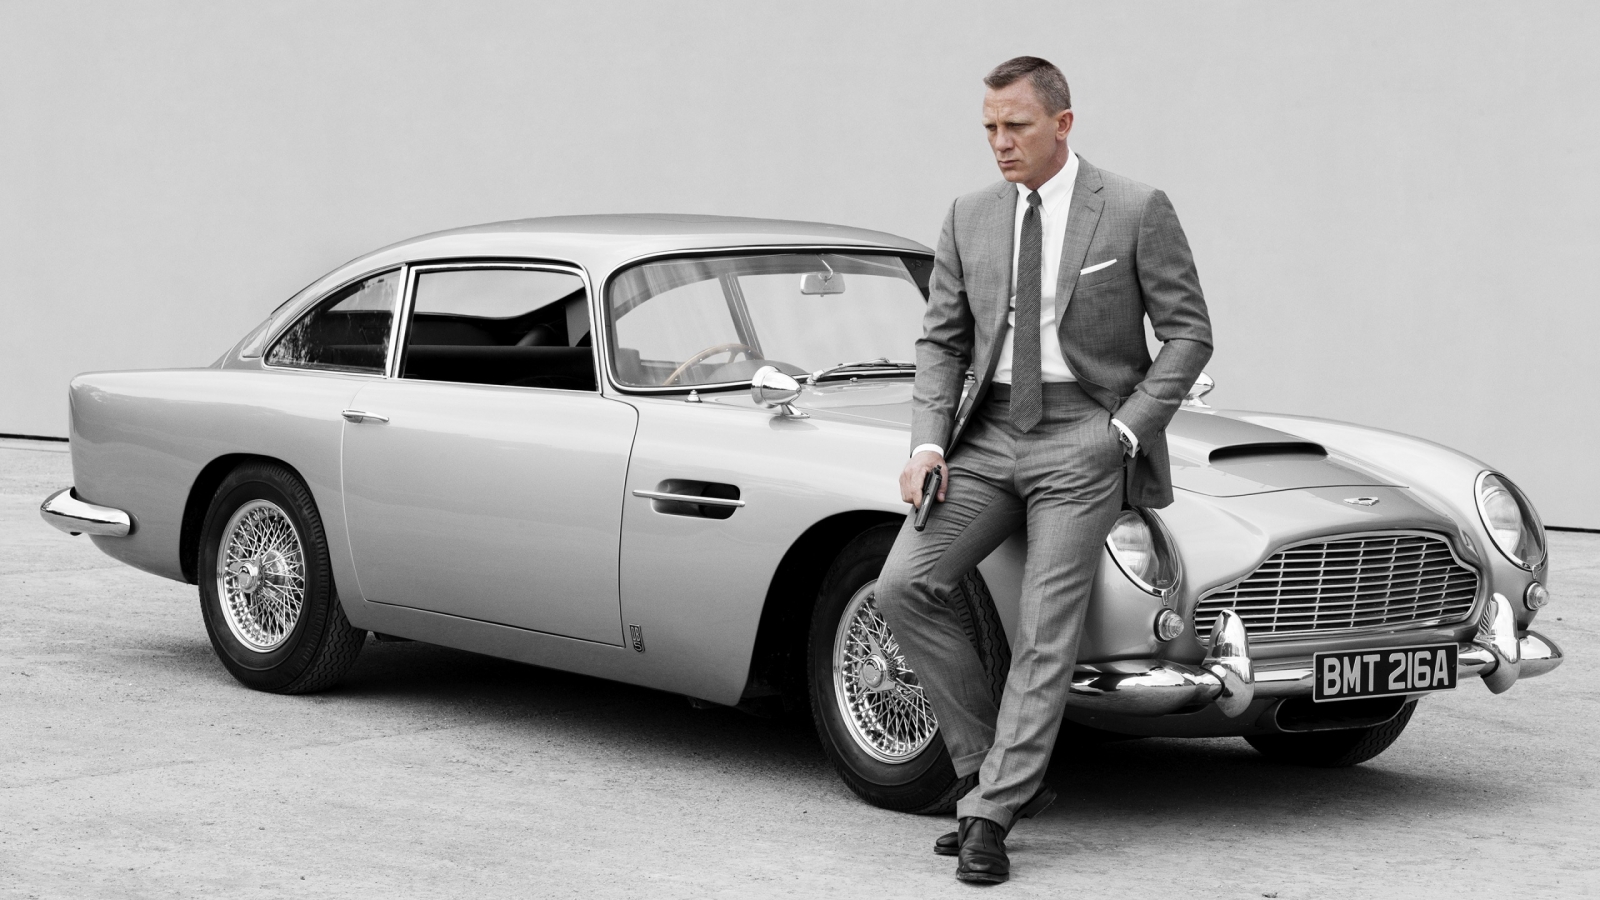 James Bond Skyfall 007 for 1600 x 900 HDTV resolution